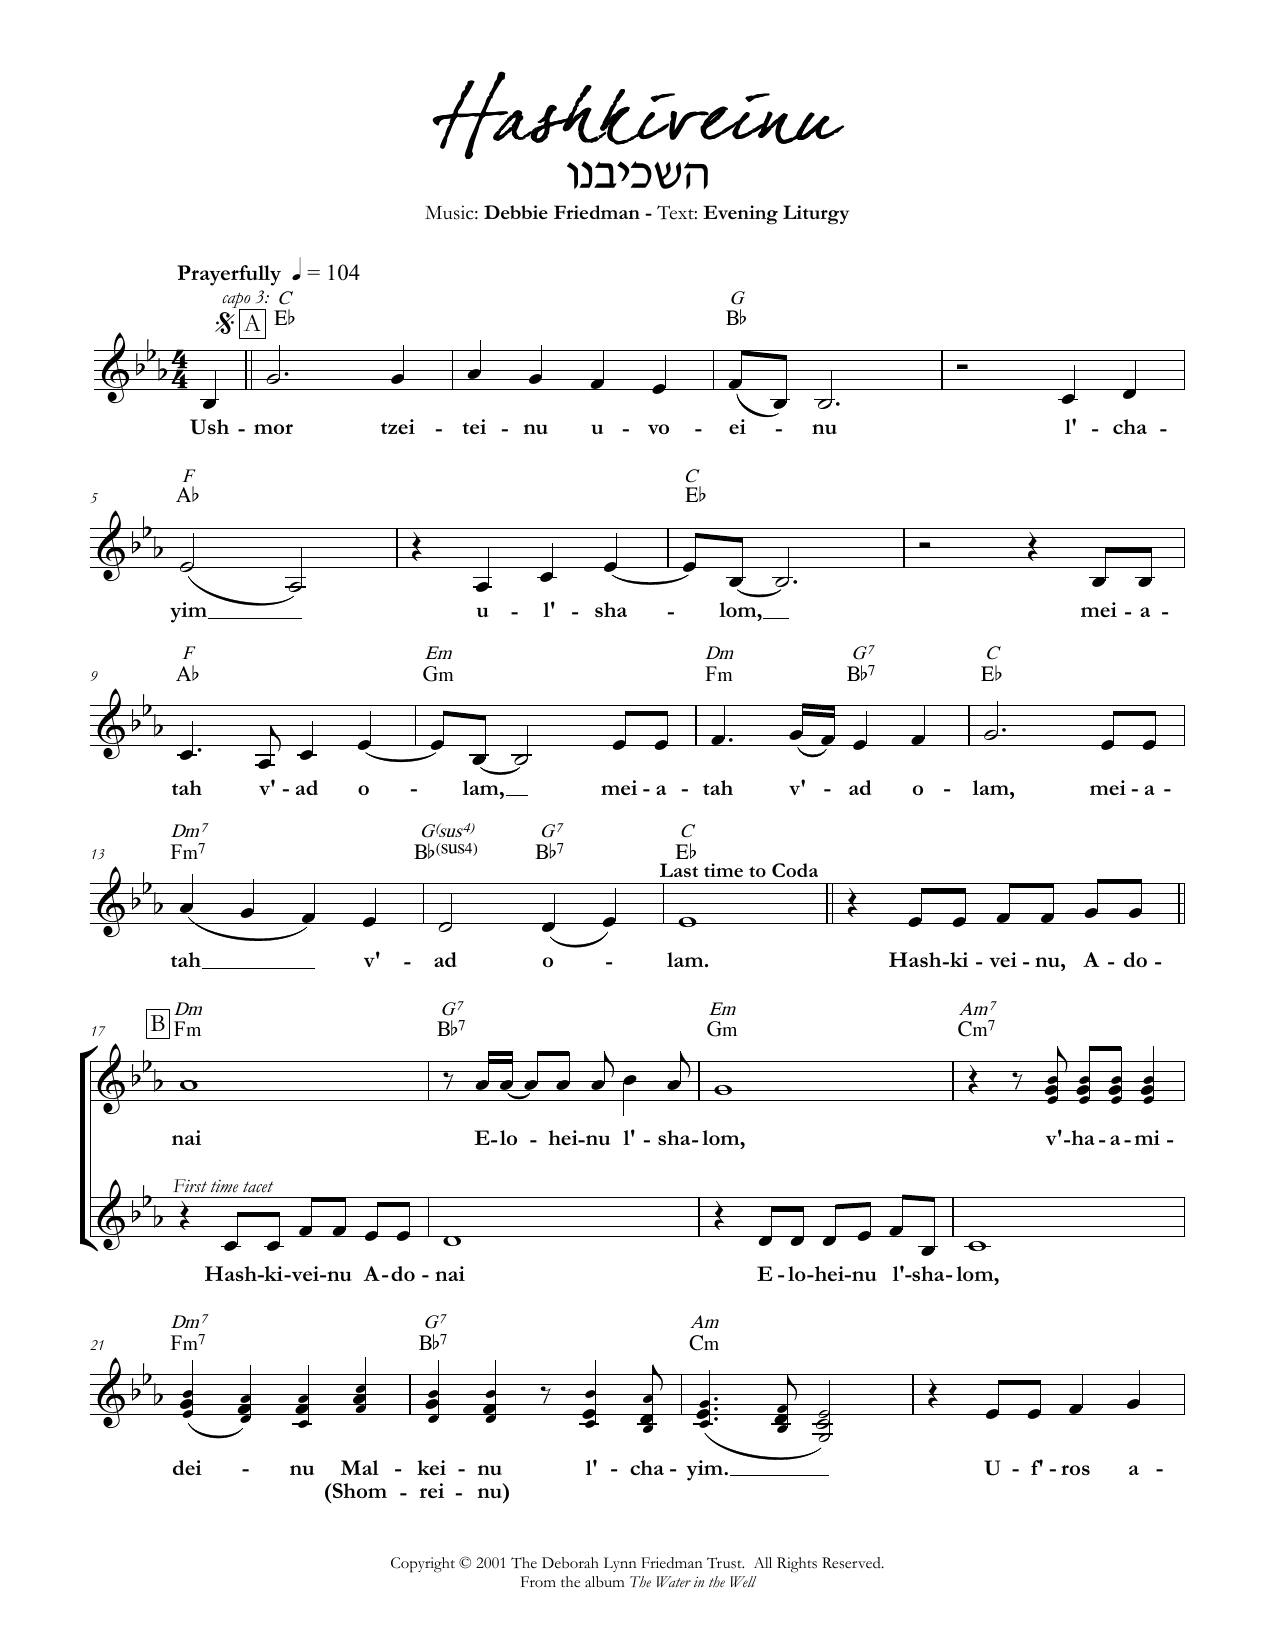 Debbie Friedman Hashkiveinu Sheet Music Notes & Chords for Lead Sheet / Fake Book - Download or Print PDF